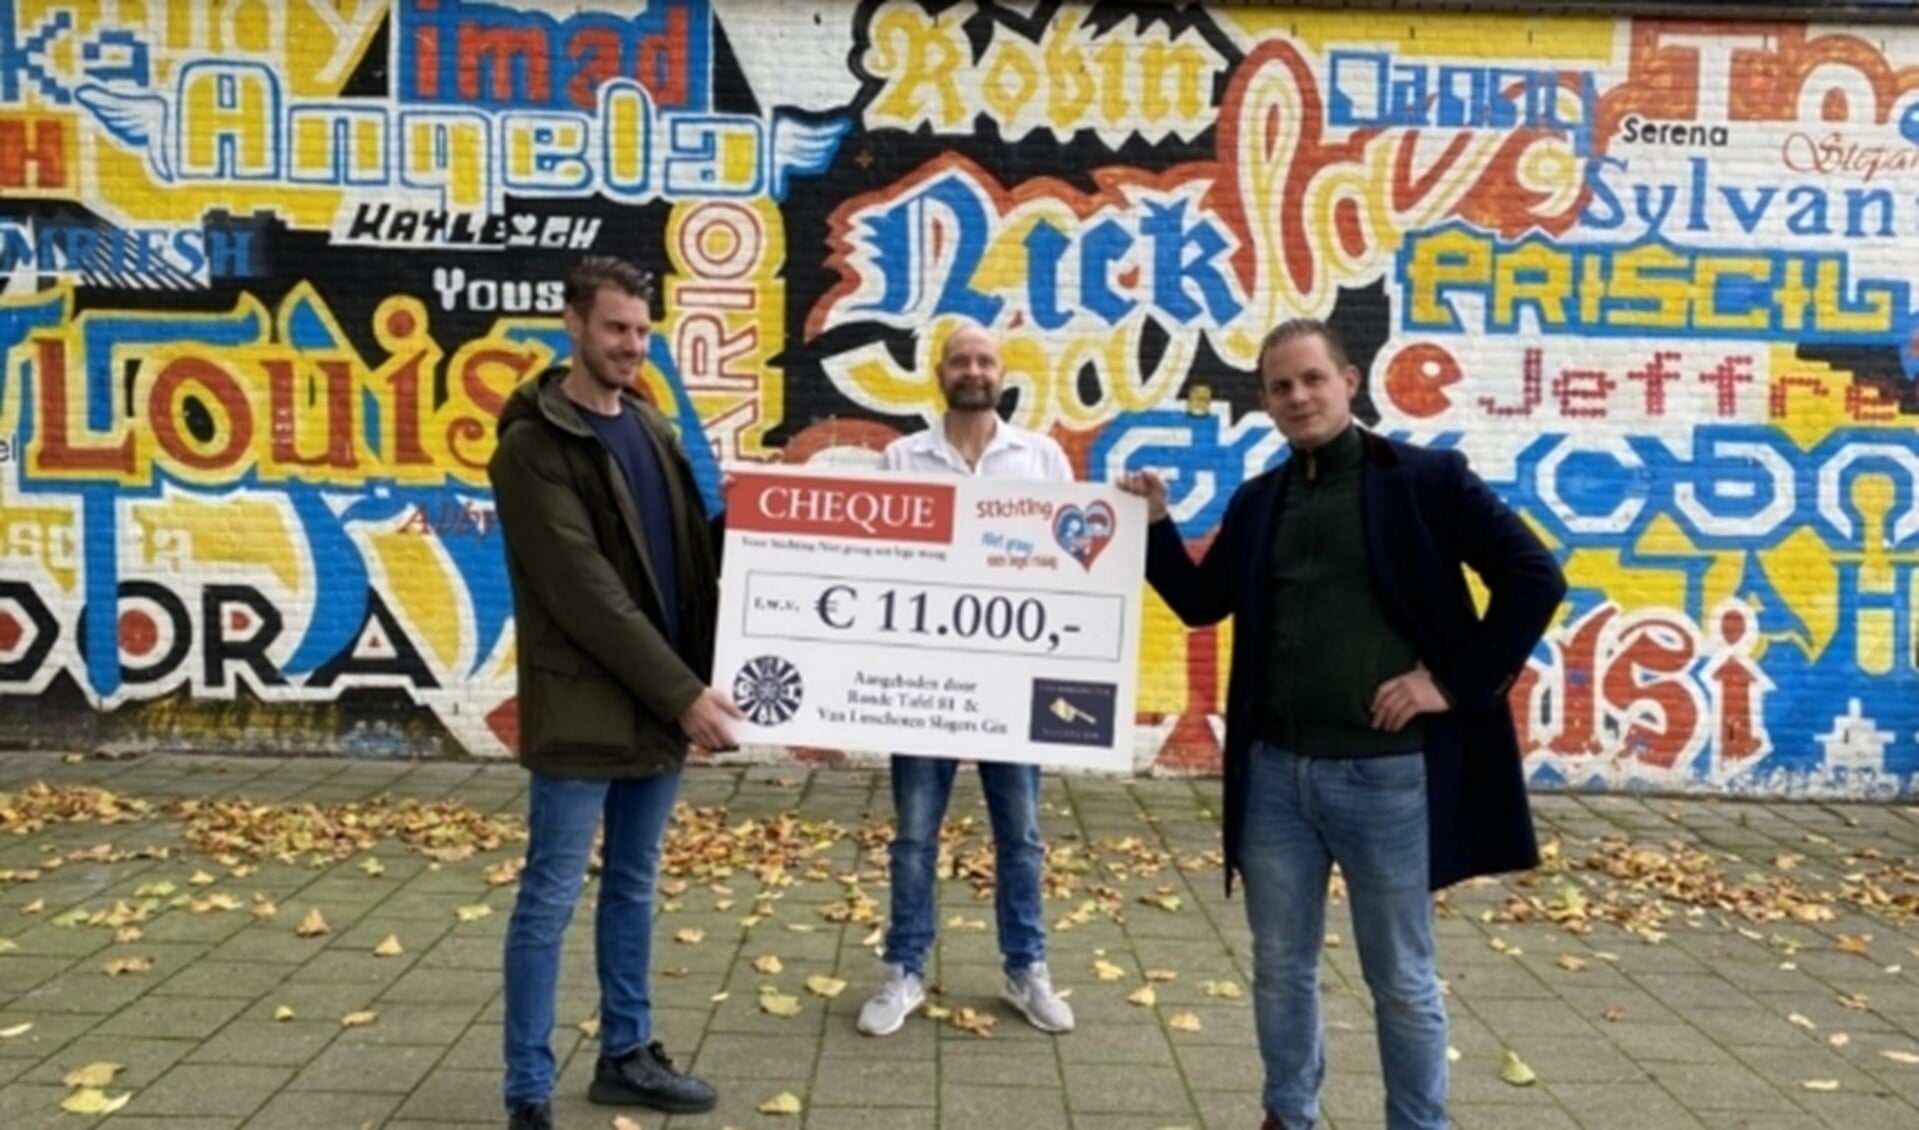 Gebroeders Hubert (links) en David (rechts) Van Linschoten bieden Johan Muurlink (midden) een cheque ter waarde van 11.000 euro aan voor zijn stichting Niet Graag een Lege Maag. 